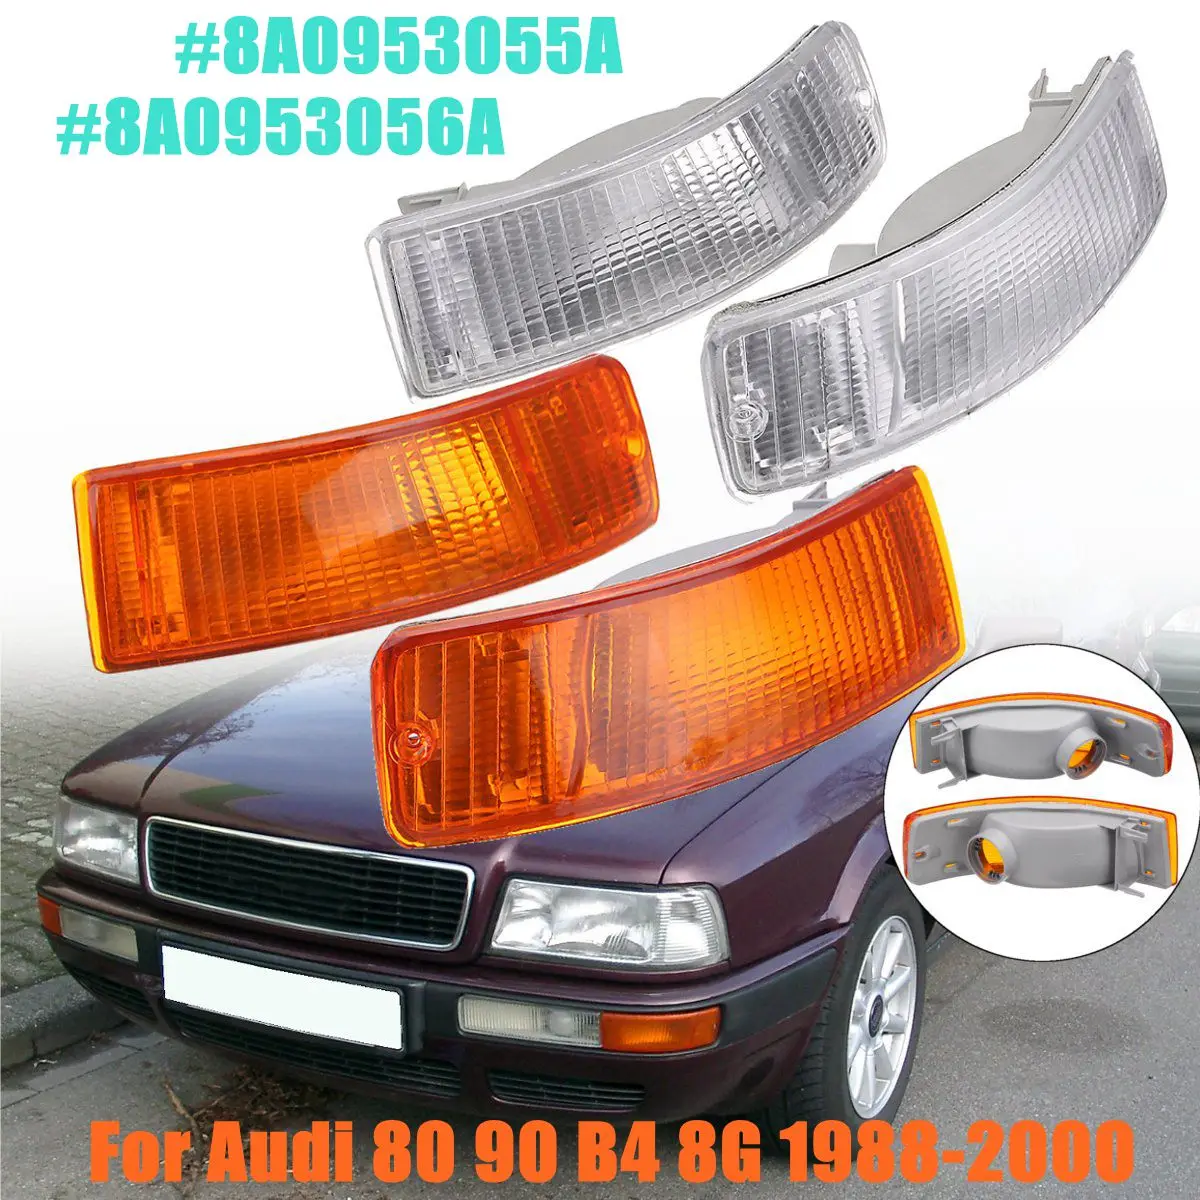 1 пара светильник поворота для Audi 80 90 B4 8G 1988-2000 для индикатора мигалка указатель поворота светильник s Белый Янтарь